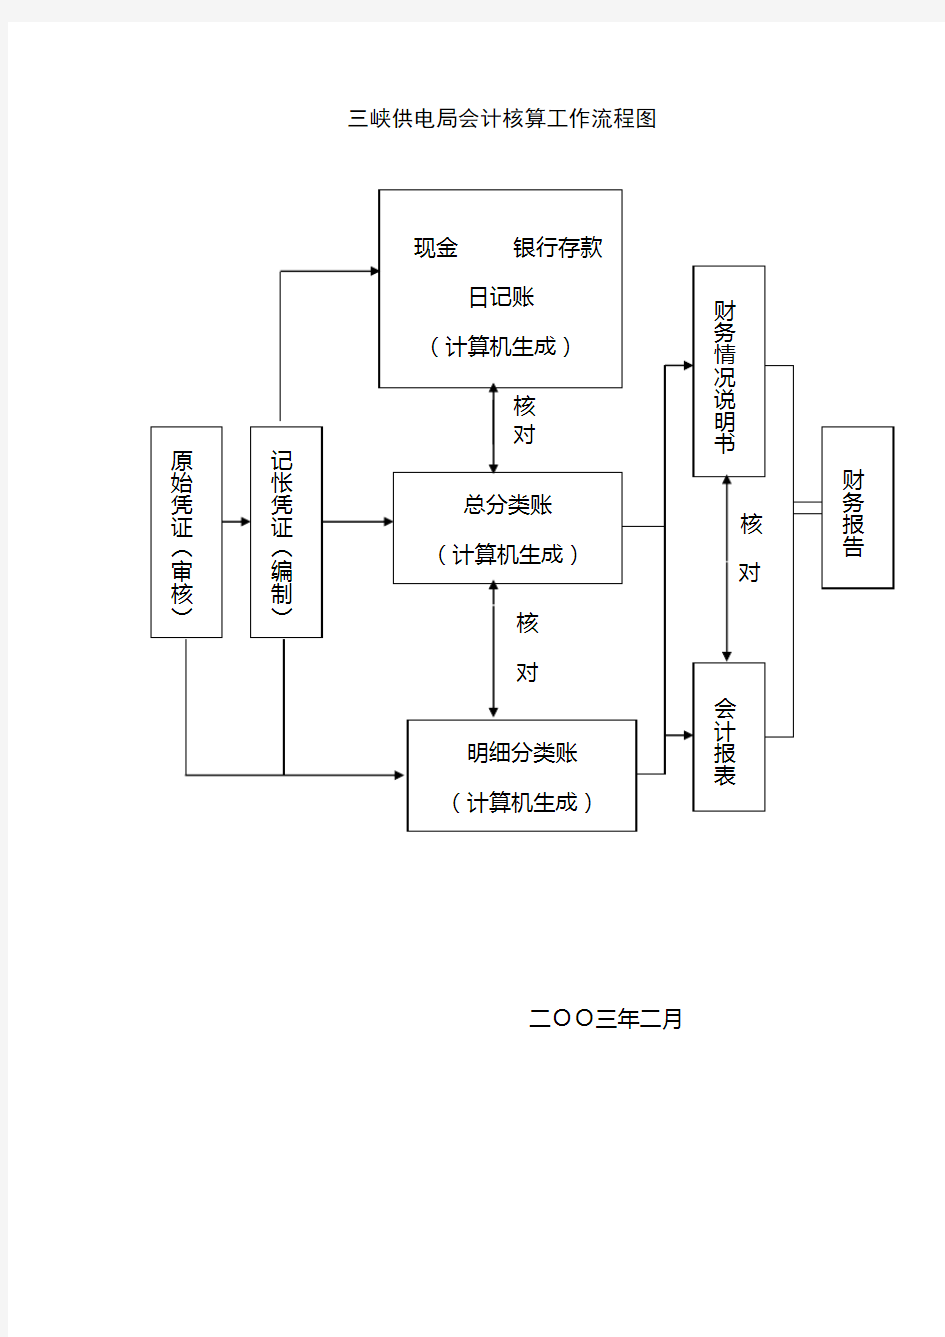 博思智联-三峡总公司-三峡供电局会计核算工作流程图